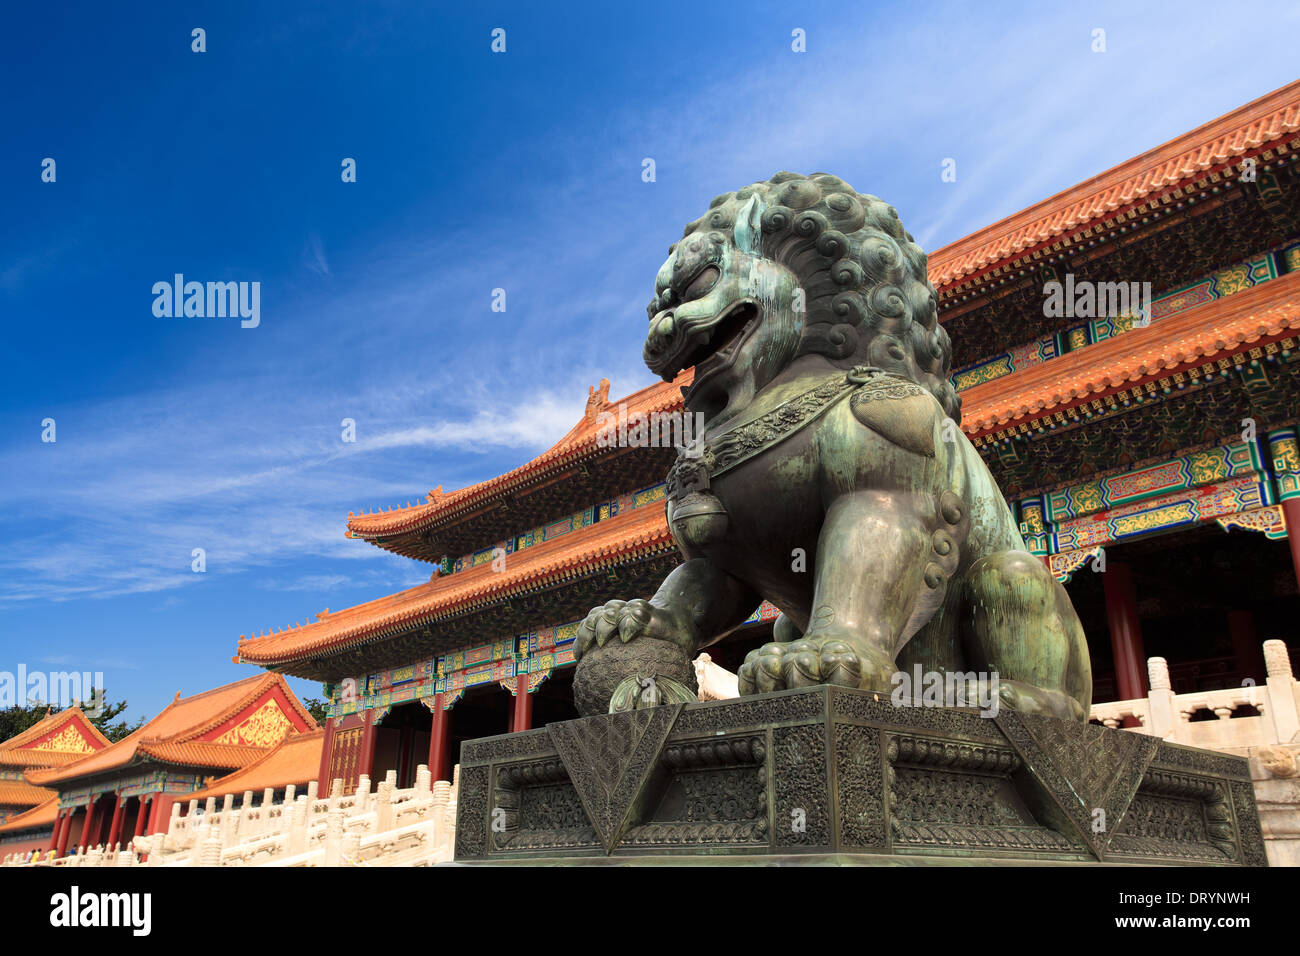 the forbidden city, China Stock Photo